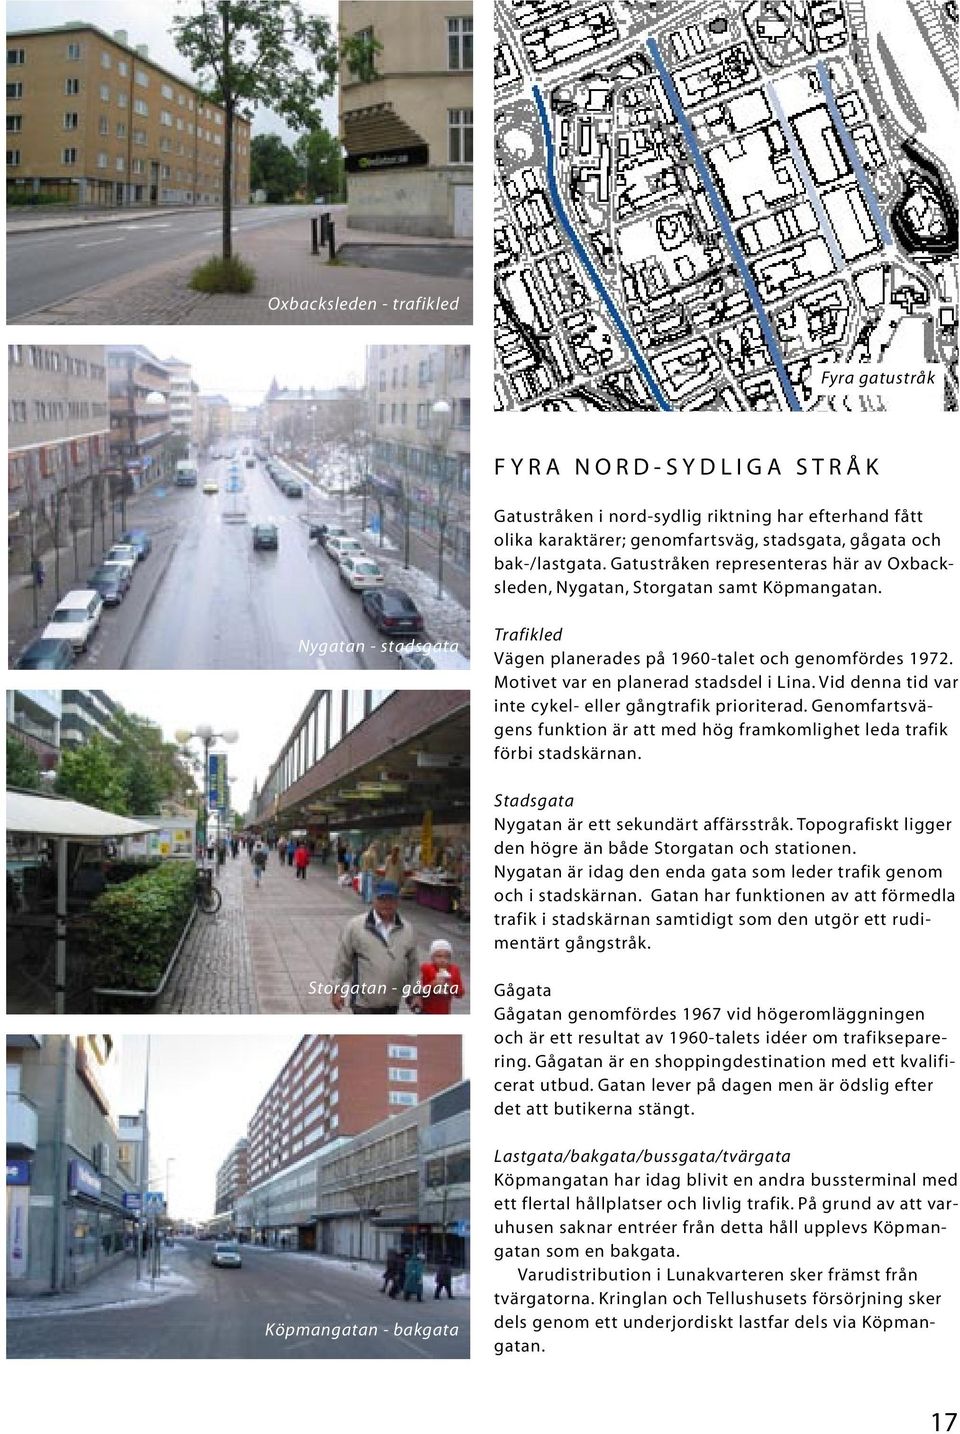 Motivet var en planerad stadsdel i Lina. Vid denna tid var inte cykel- eller gångtrafik prioriterad. Genomfartsvägens funktion är att med hög framkomlighet leda trafik förbi stadskärnan.